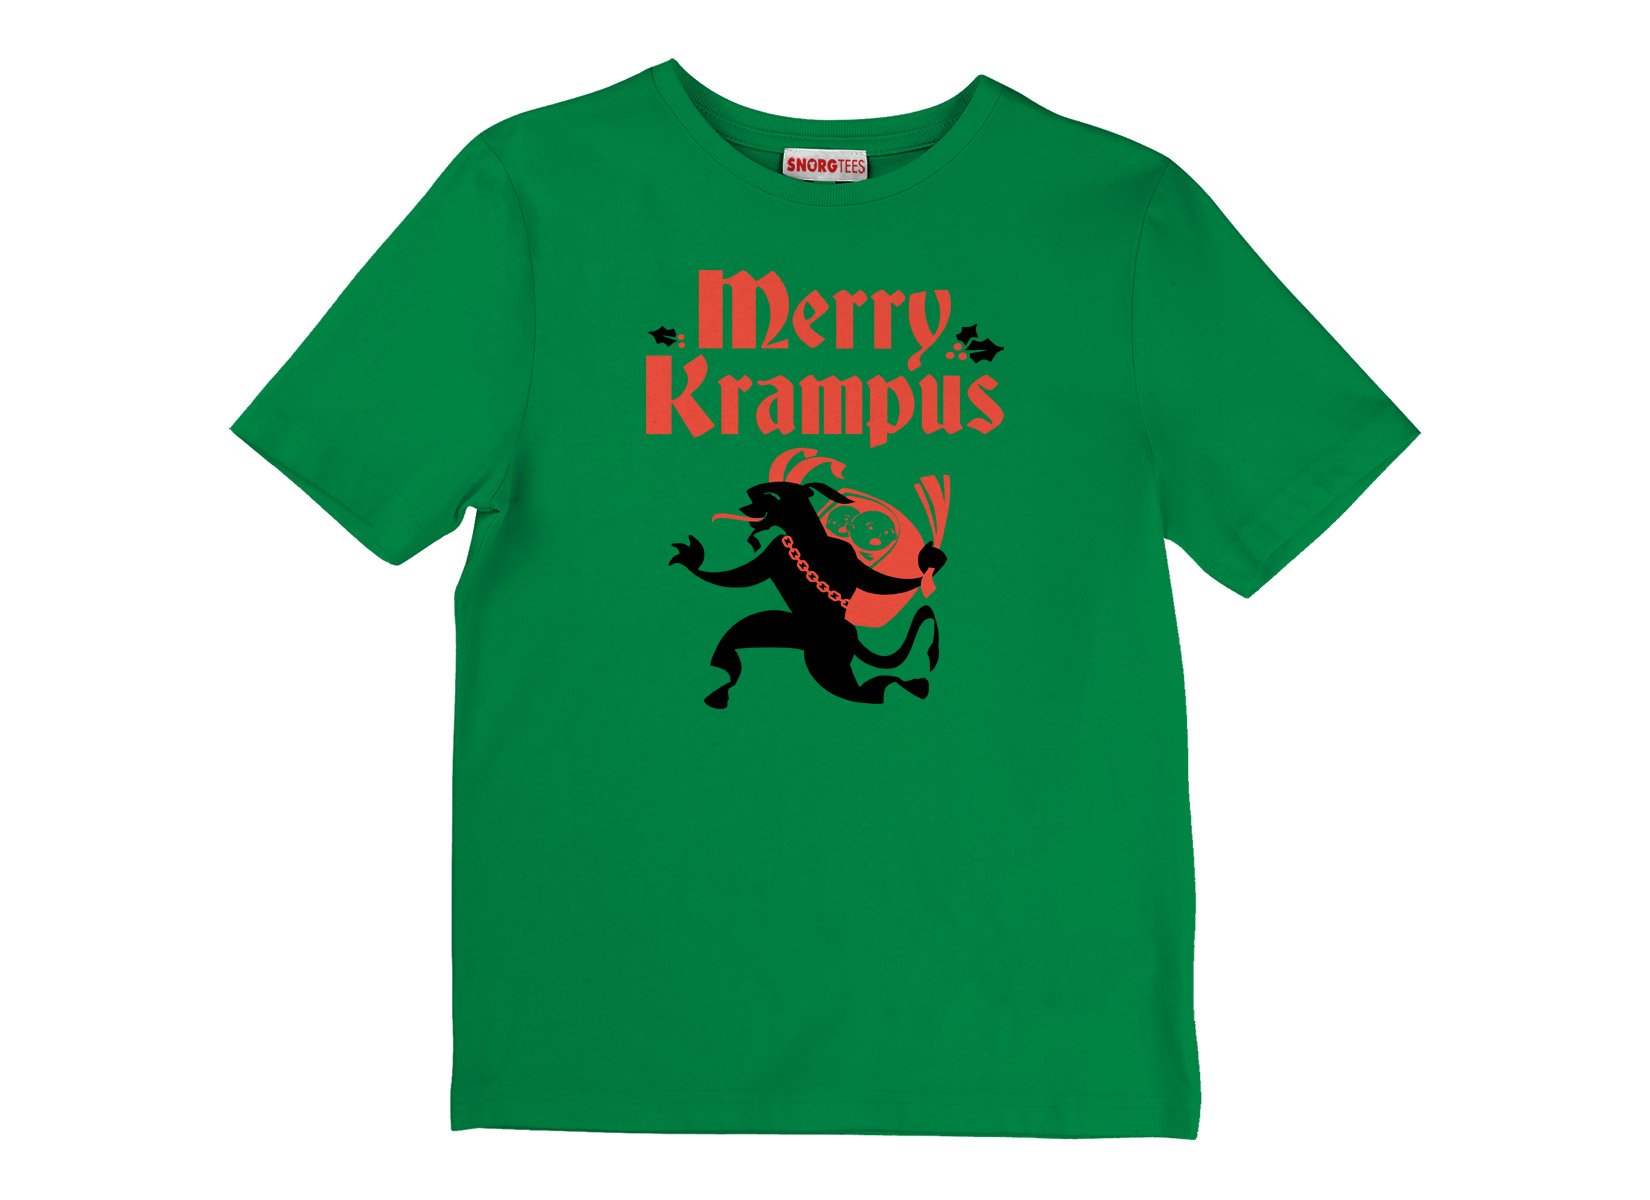 Merry Krampus T Shirt Variation 2 Image2